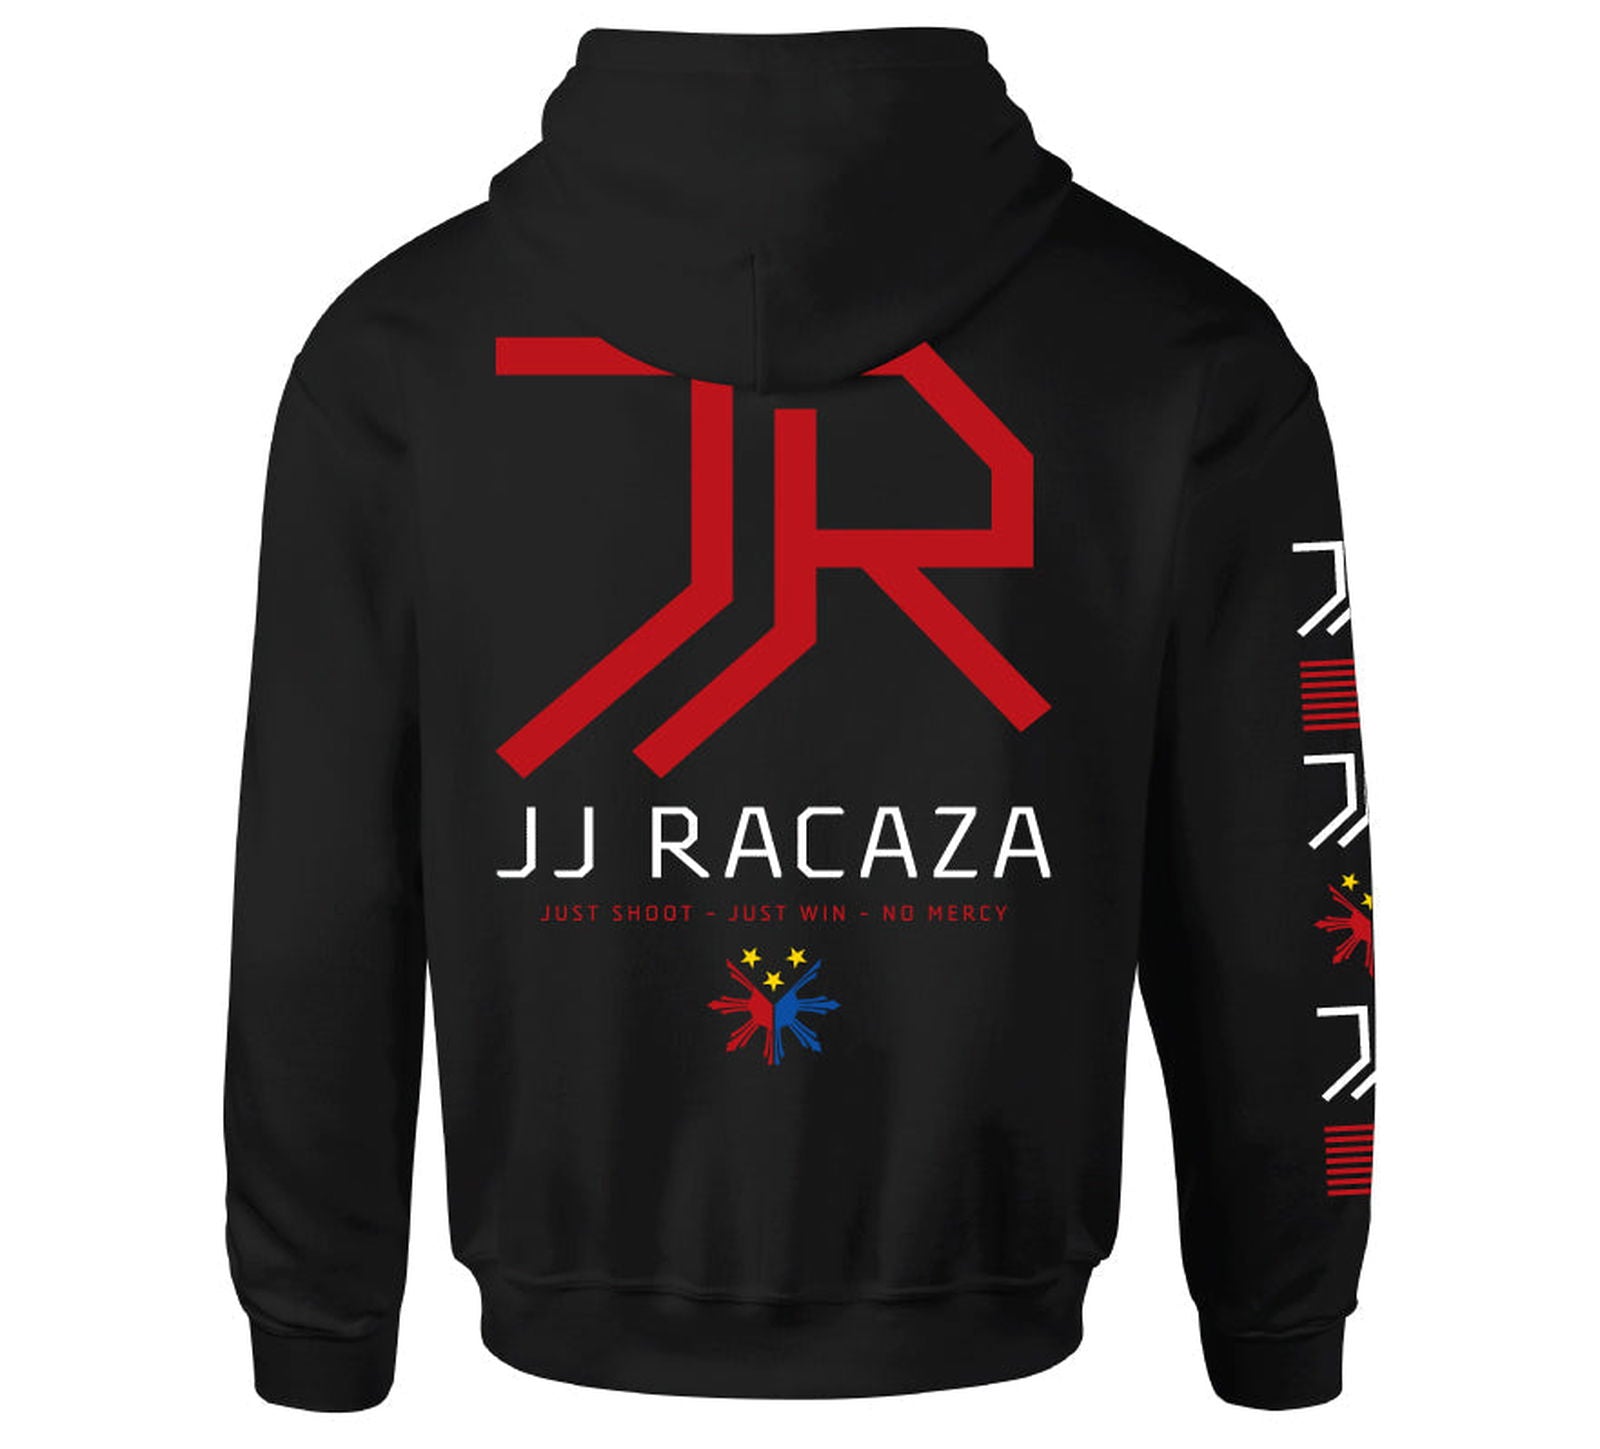 Racaza Po Hood - Howitzer Clothing